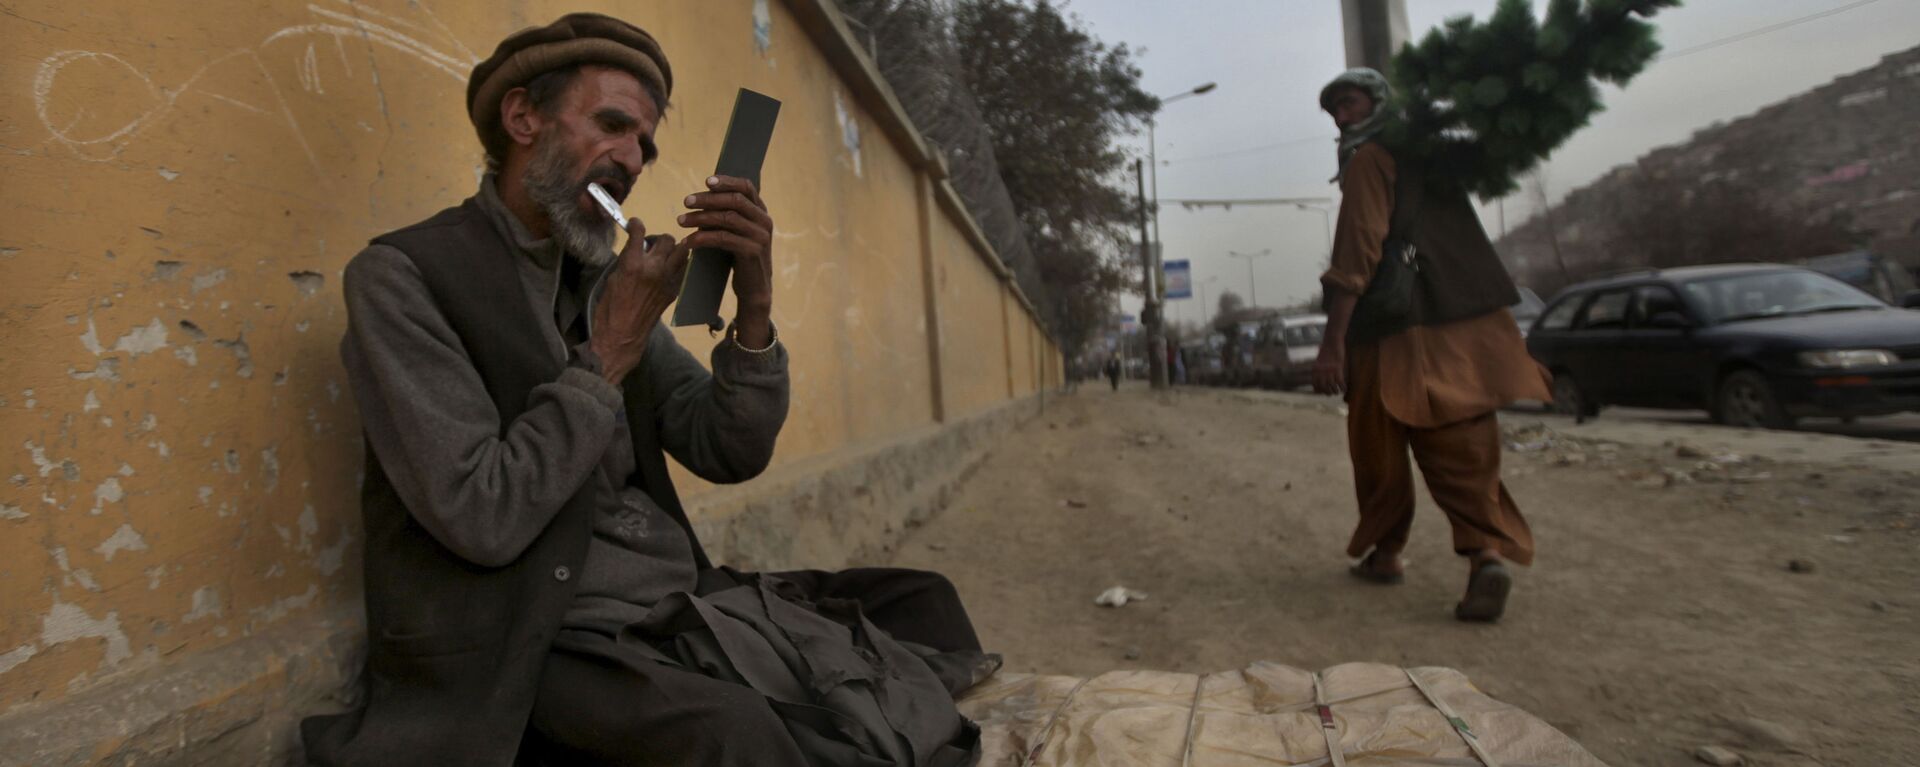 Придорожный парикмахер стрижет себе бороду, ожидая клиентов, Кабул, 2010 год - Sputnik International, 1920, 21.11.2021